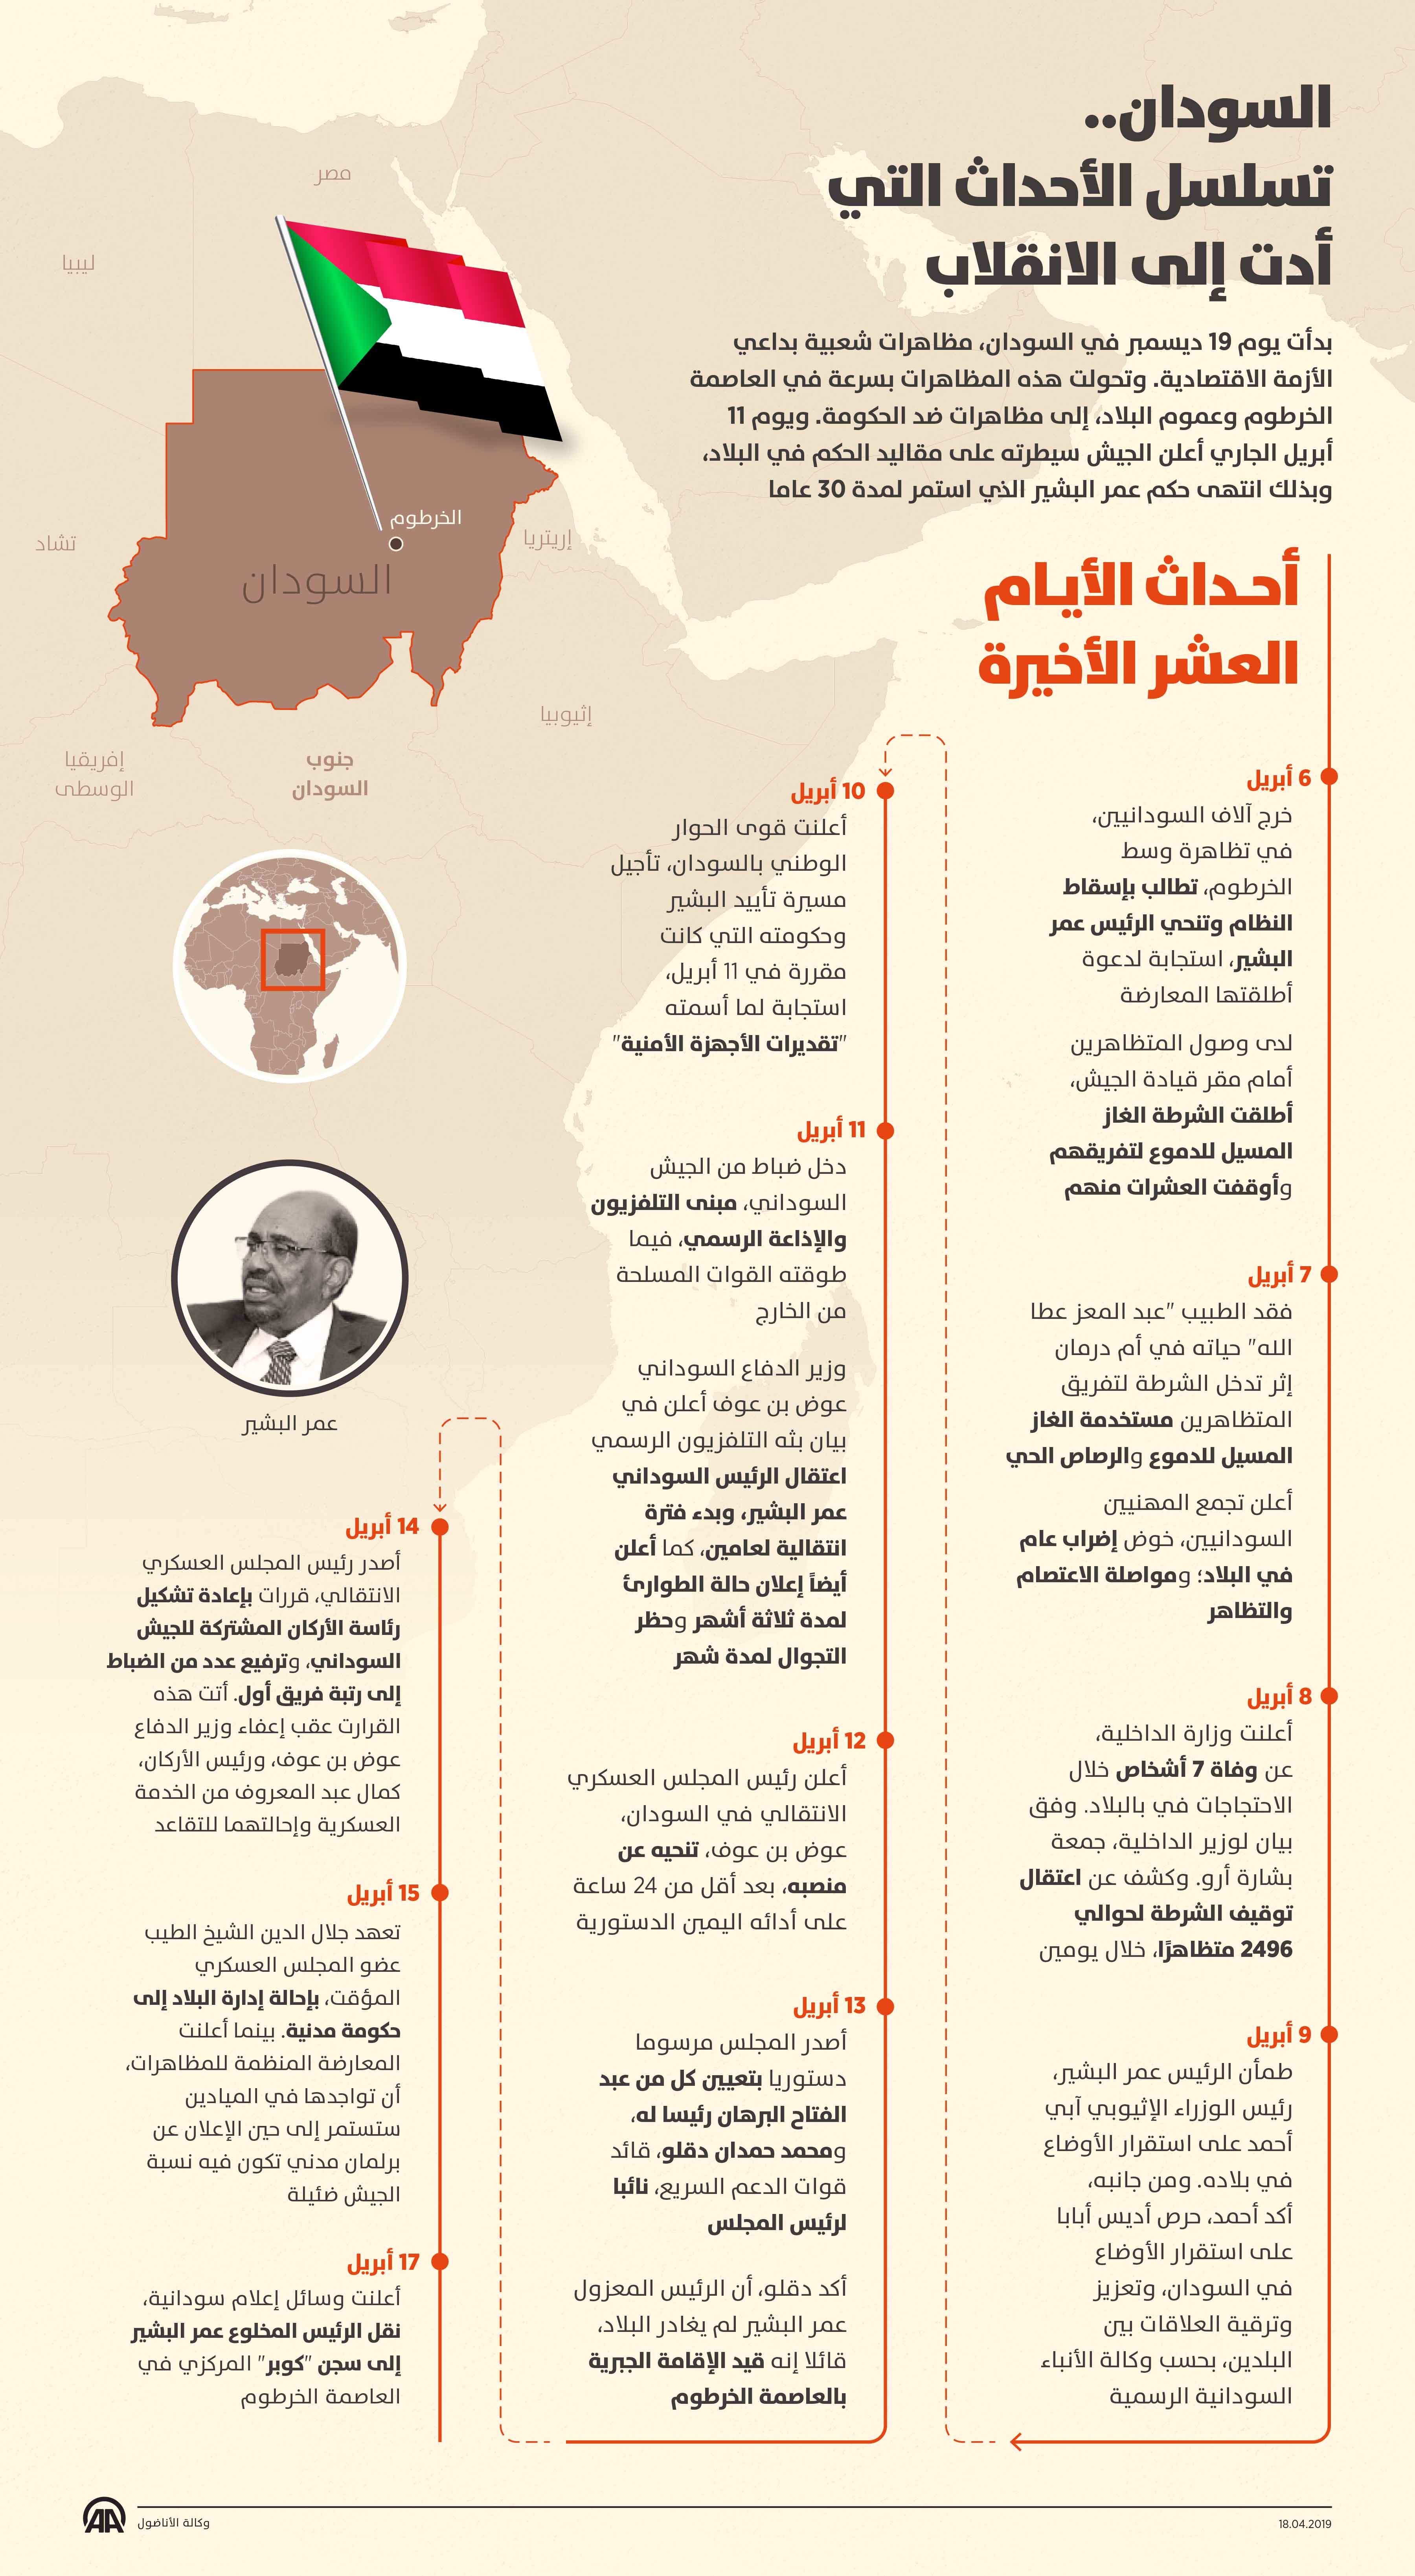 السودان..تسلسل الأحداث التي أدت إلى الانقلاب